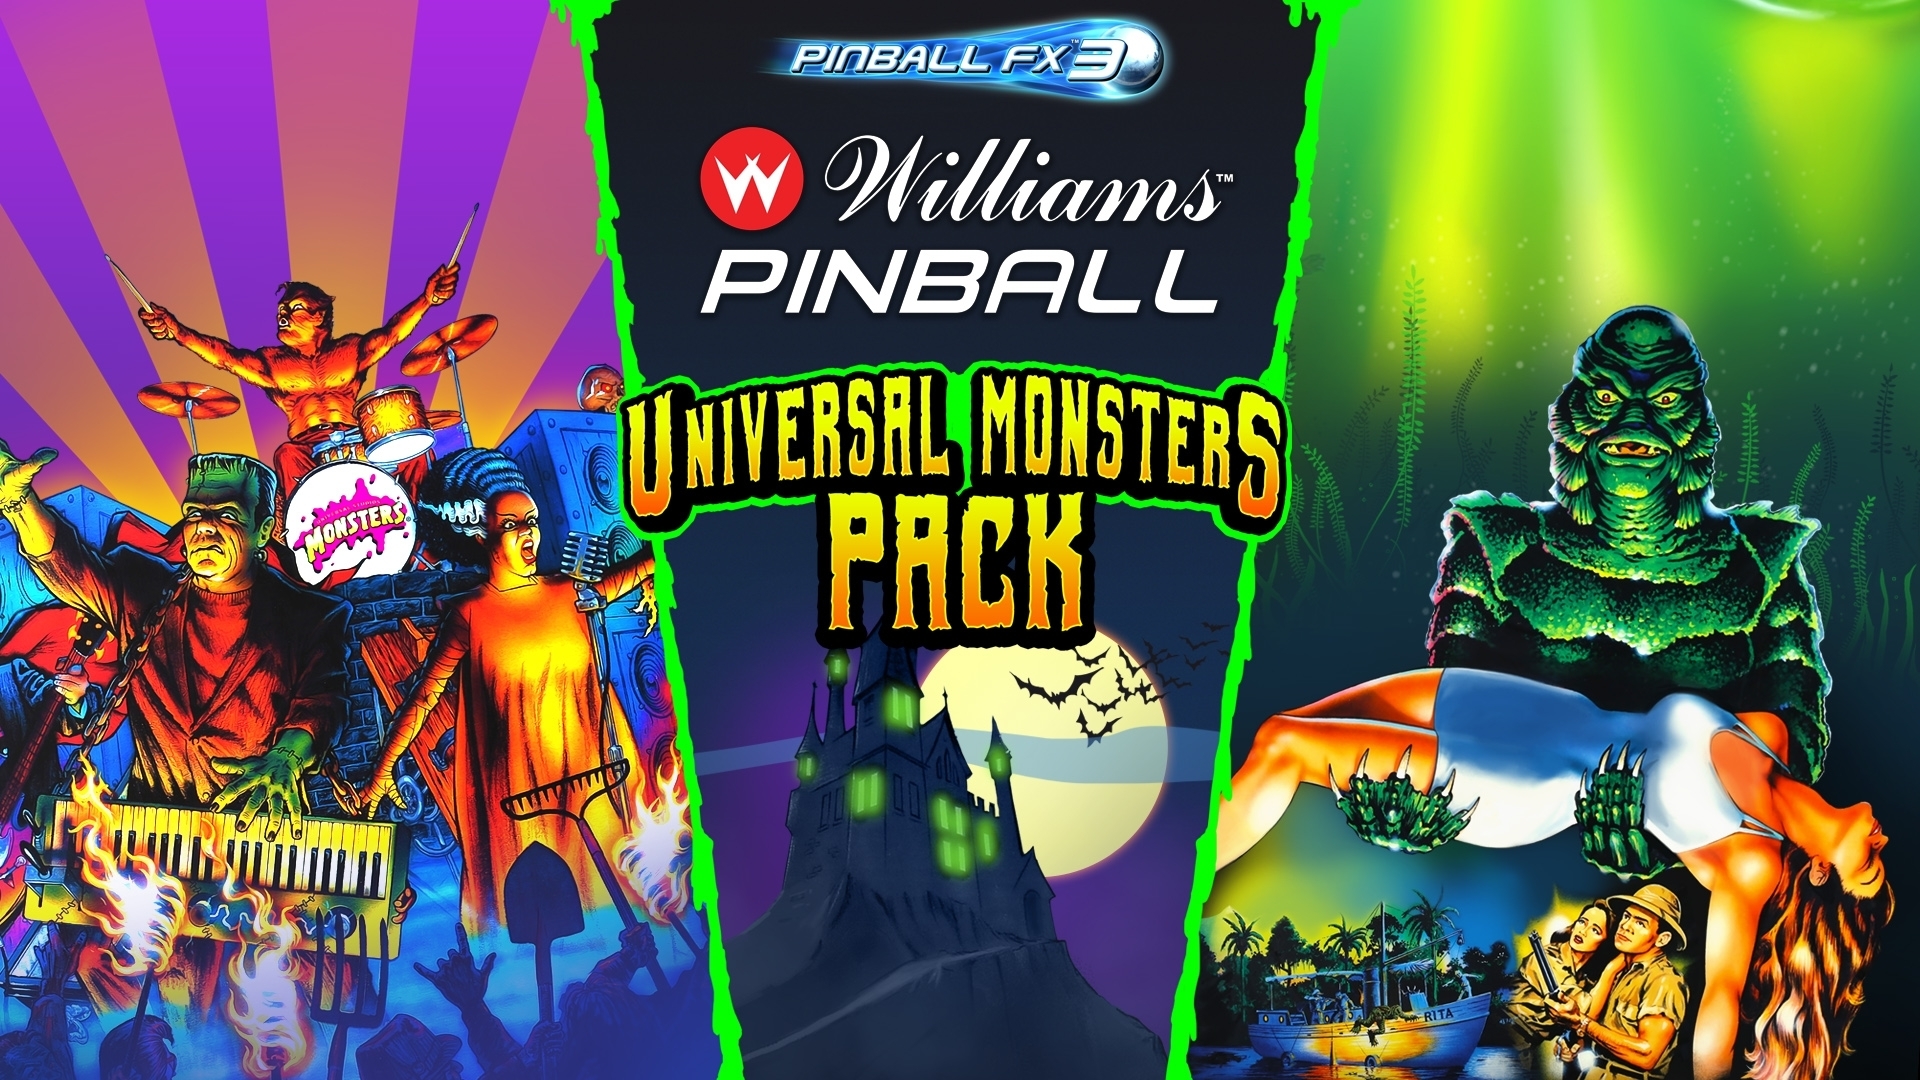 Pinball FX3: Williams Pinball - Universal Monsters